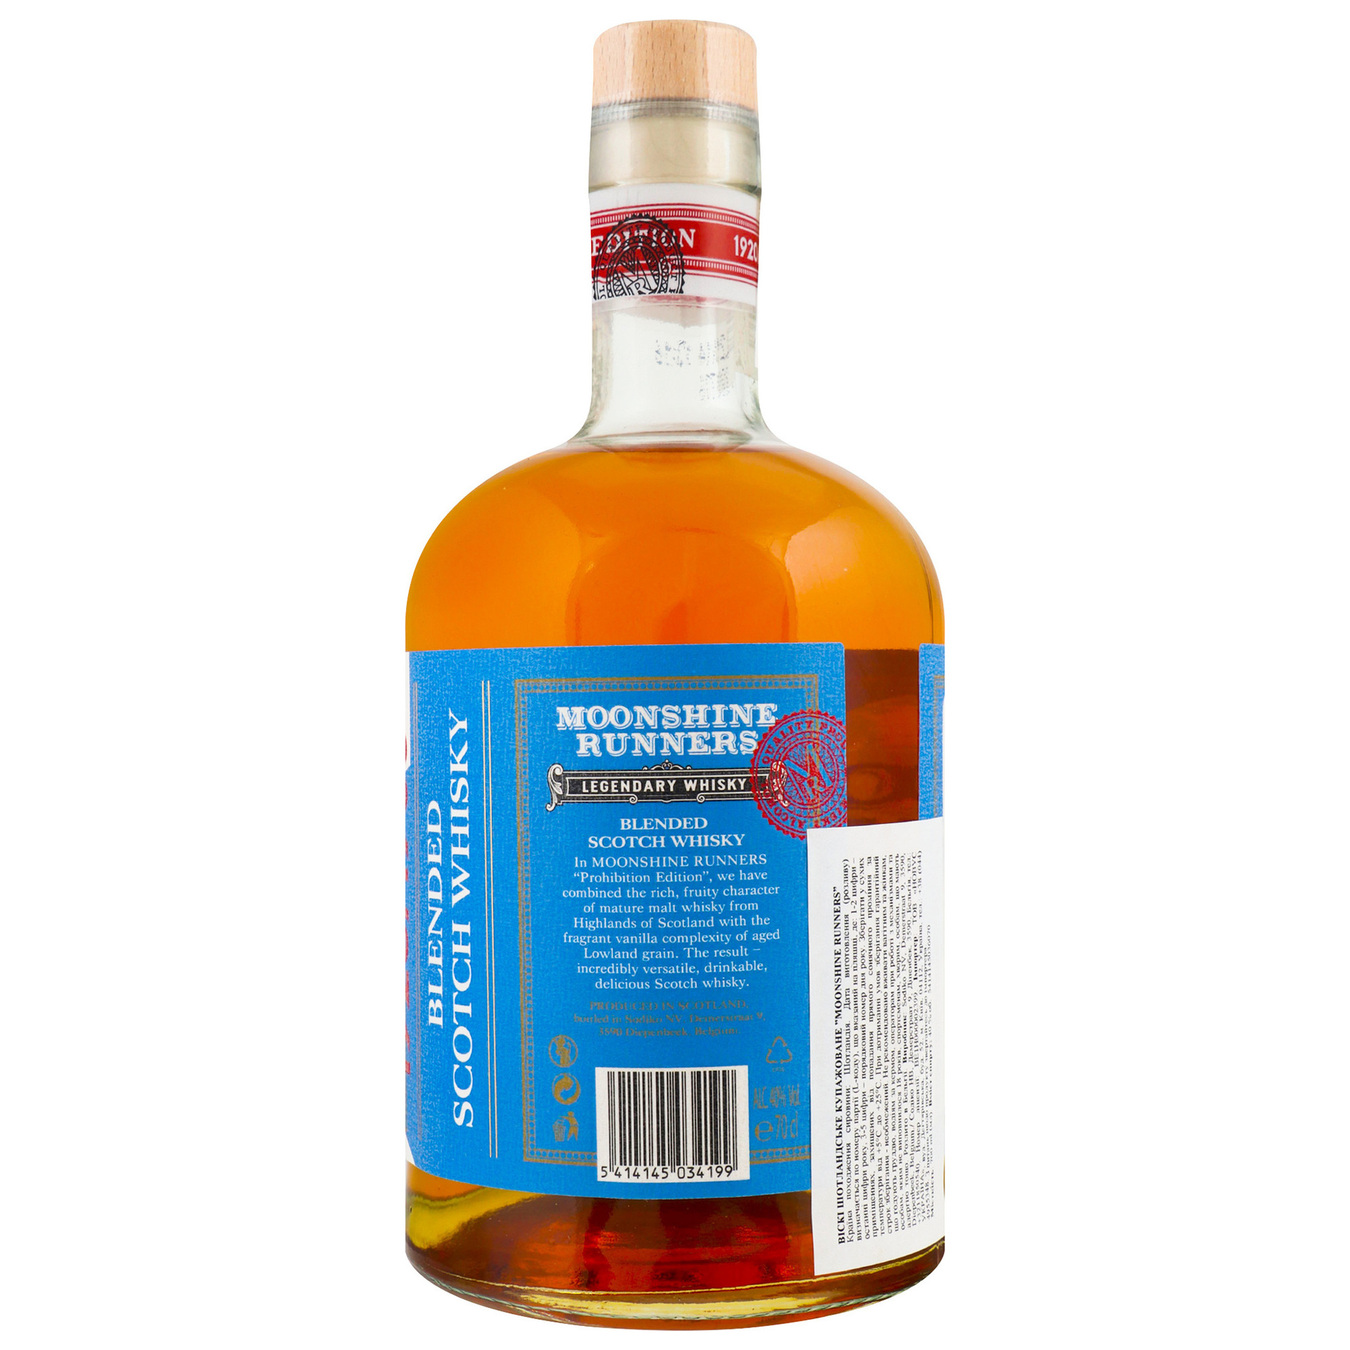 Moonshine Runners Whisky 40% 0.7l 2